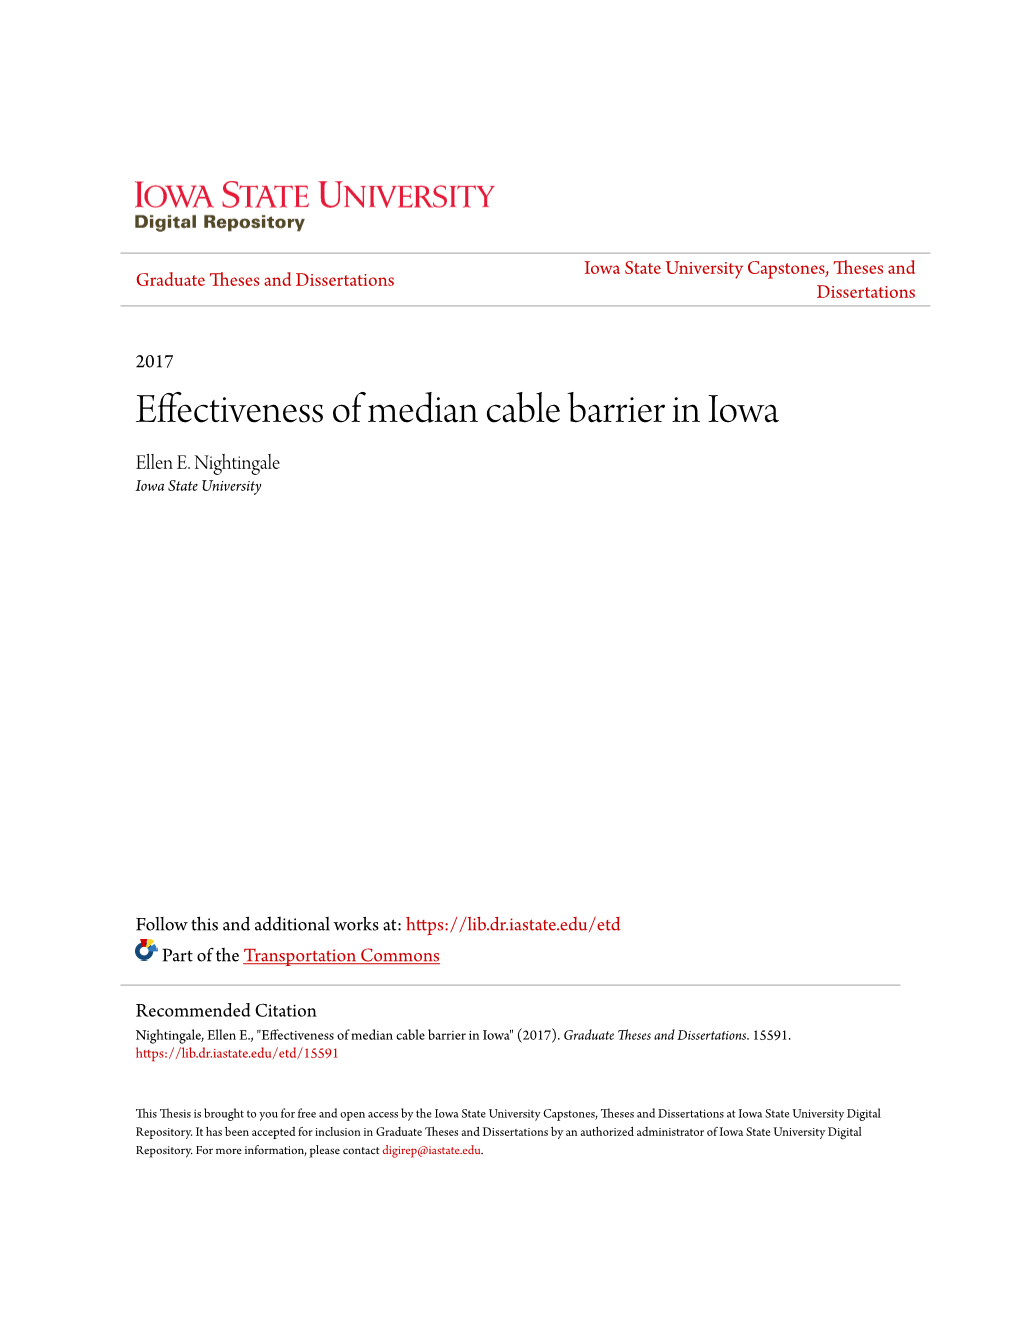 Effectiveness of Median Cable Barrier in Iowa Ellen E